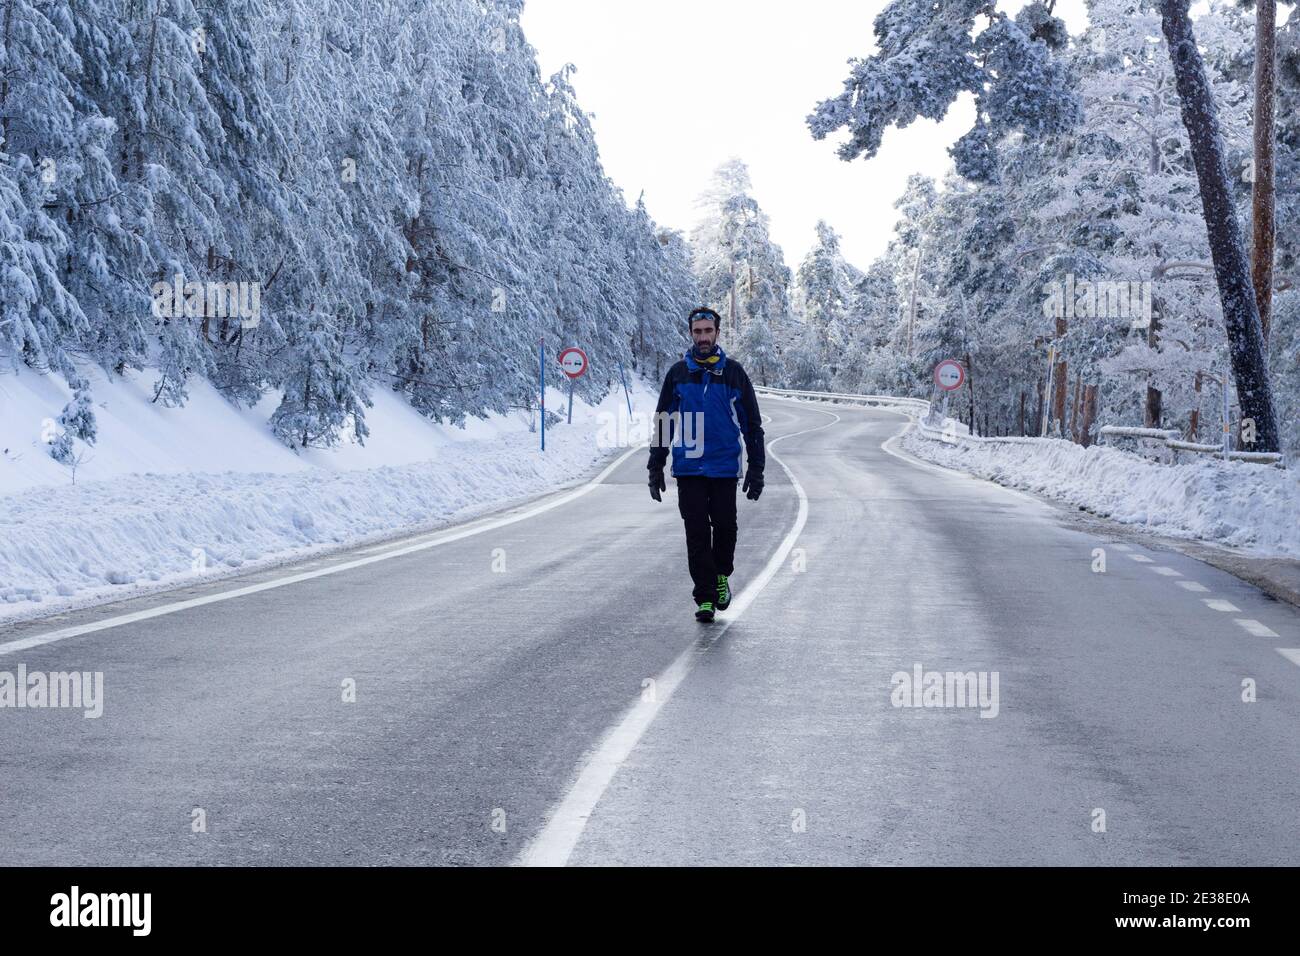 Un homme marche à travers le milieu d'une route sinueuse dans un paysage blanc solitaire enneigé par un froid jour d'hiver.concept de solitude, de liberté et de défi. Banque D'Images